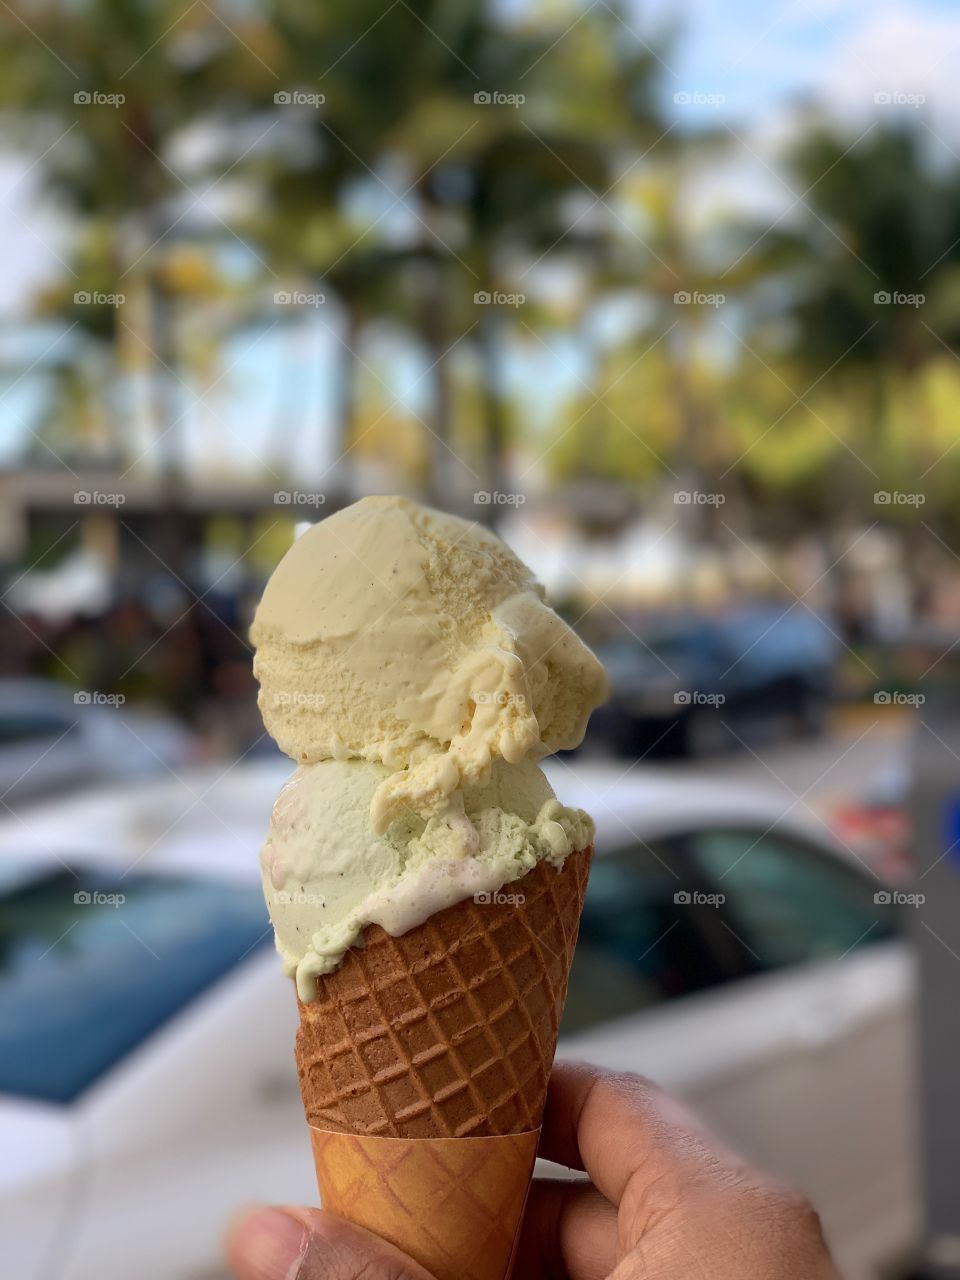 Ice cream @Miami 